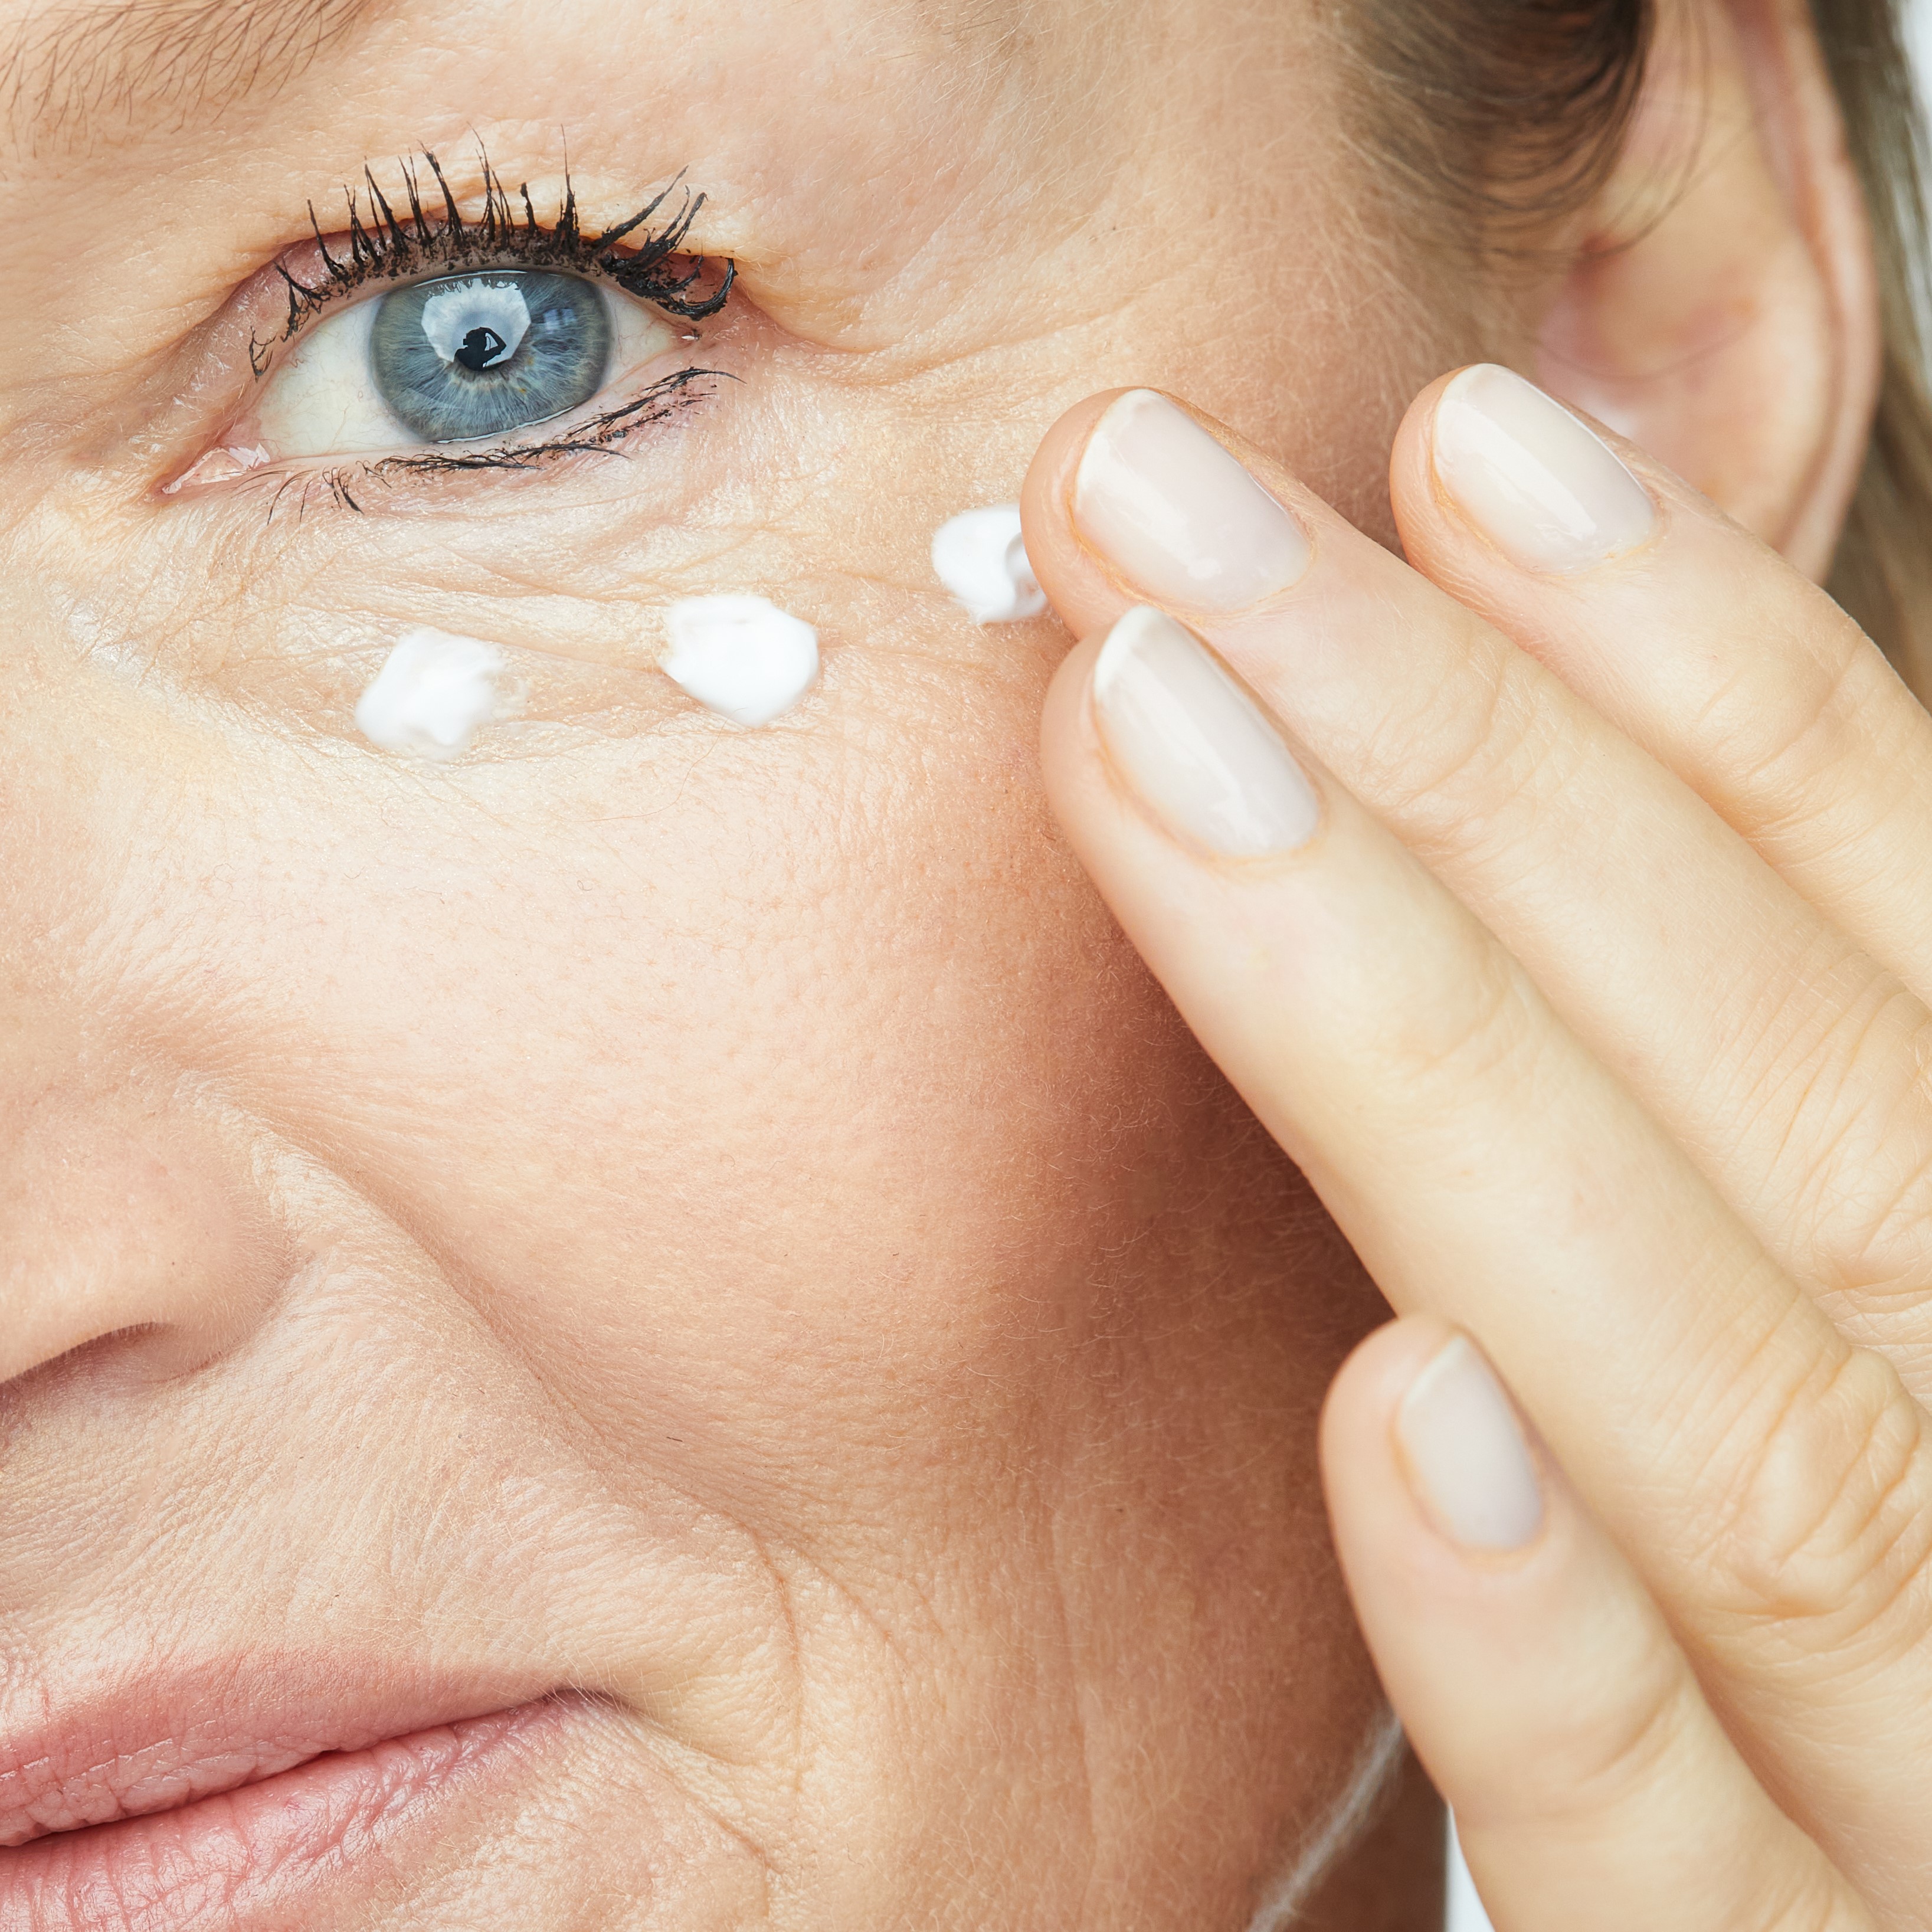 ELASTIderm крем для восстановления эластичности кожи вокруг глаз